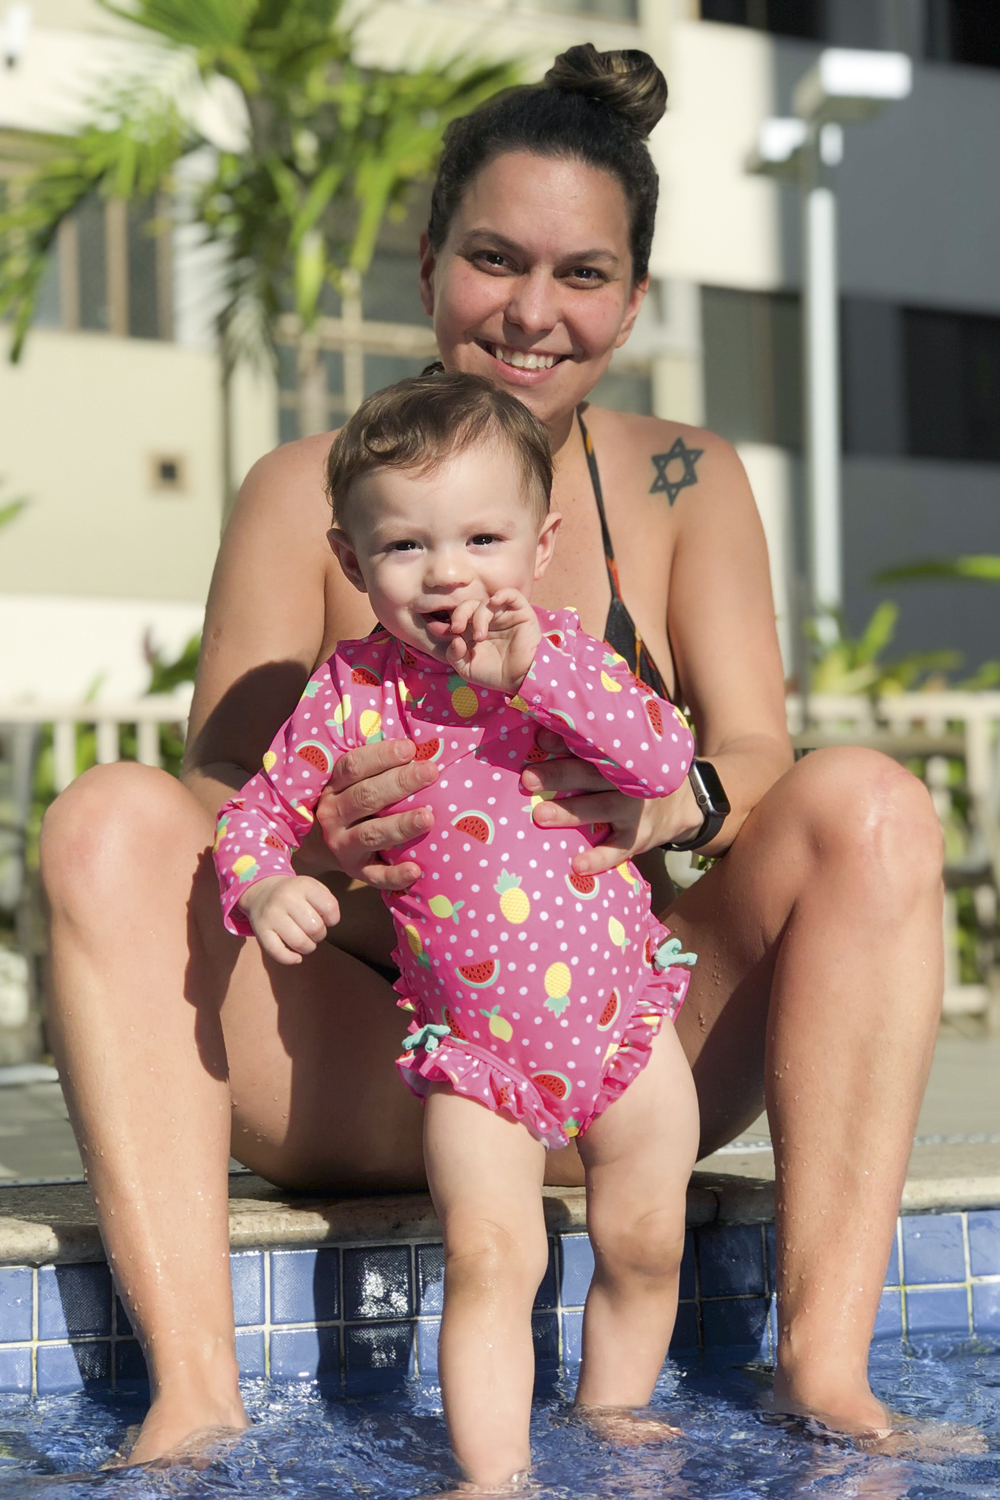 BATEU ARREPENDIMENTO - Após o parto de Maitê, Stephanie Ventura, 36, mudou sua visão sobre a cirurgia. “Ela nasceu pequenininha e eu me senti egoísta”, admite -